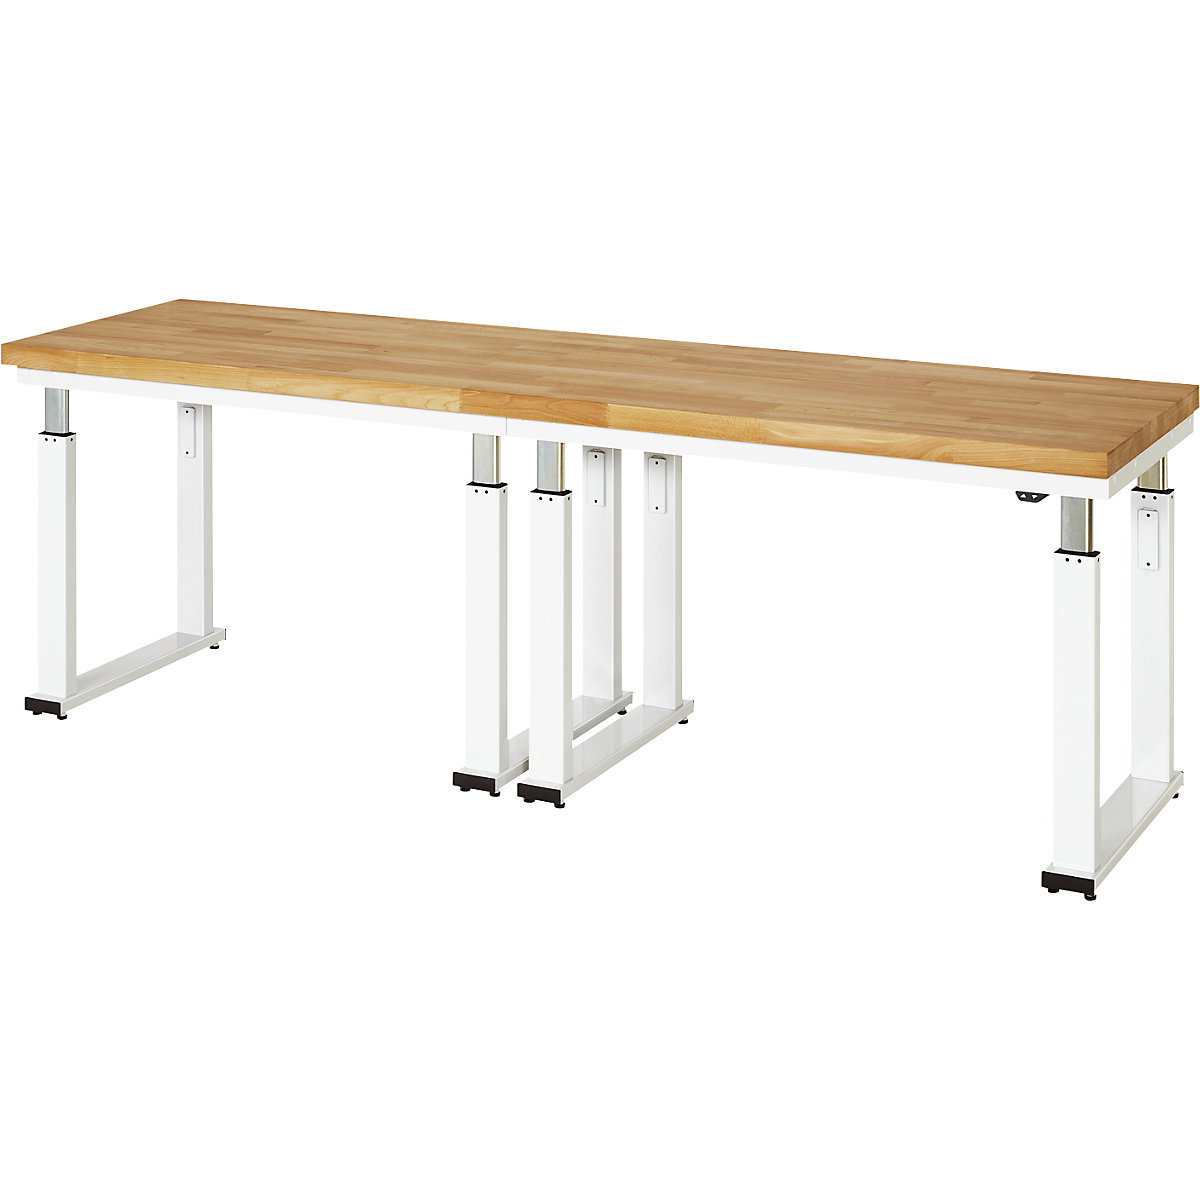 Psací stůl s elektrickým přestavováním výšky – RAU, bukový masiv, nosnost 600 kg, š x h 2500 x 700 mm-13